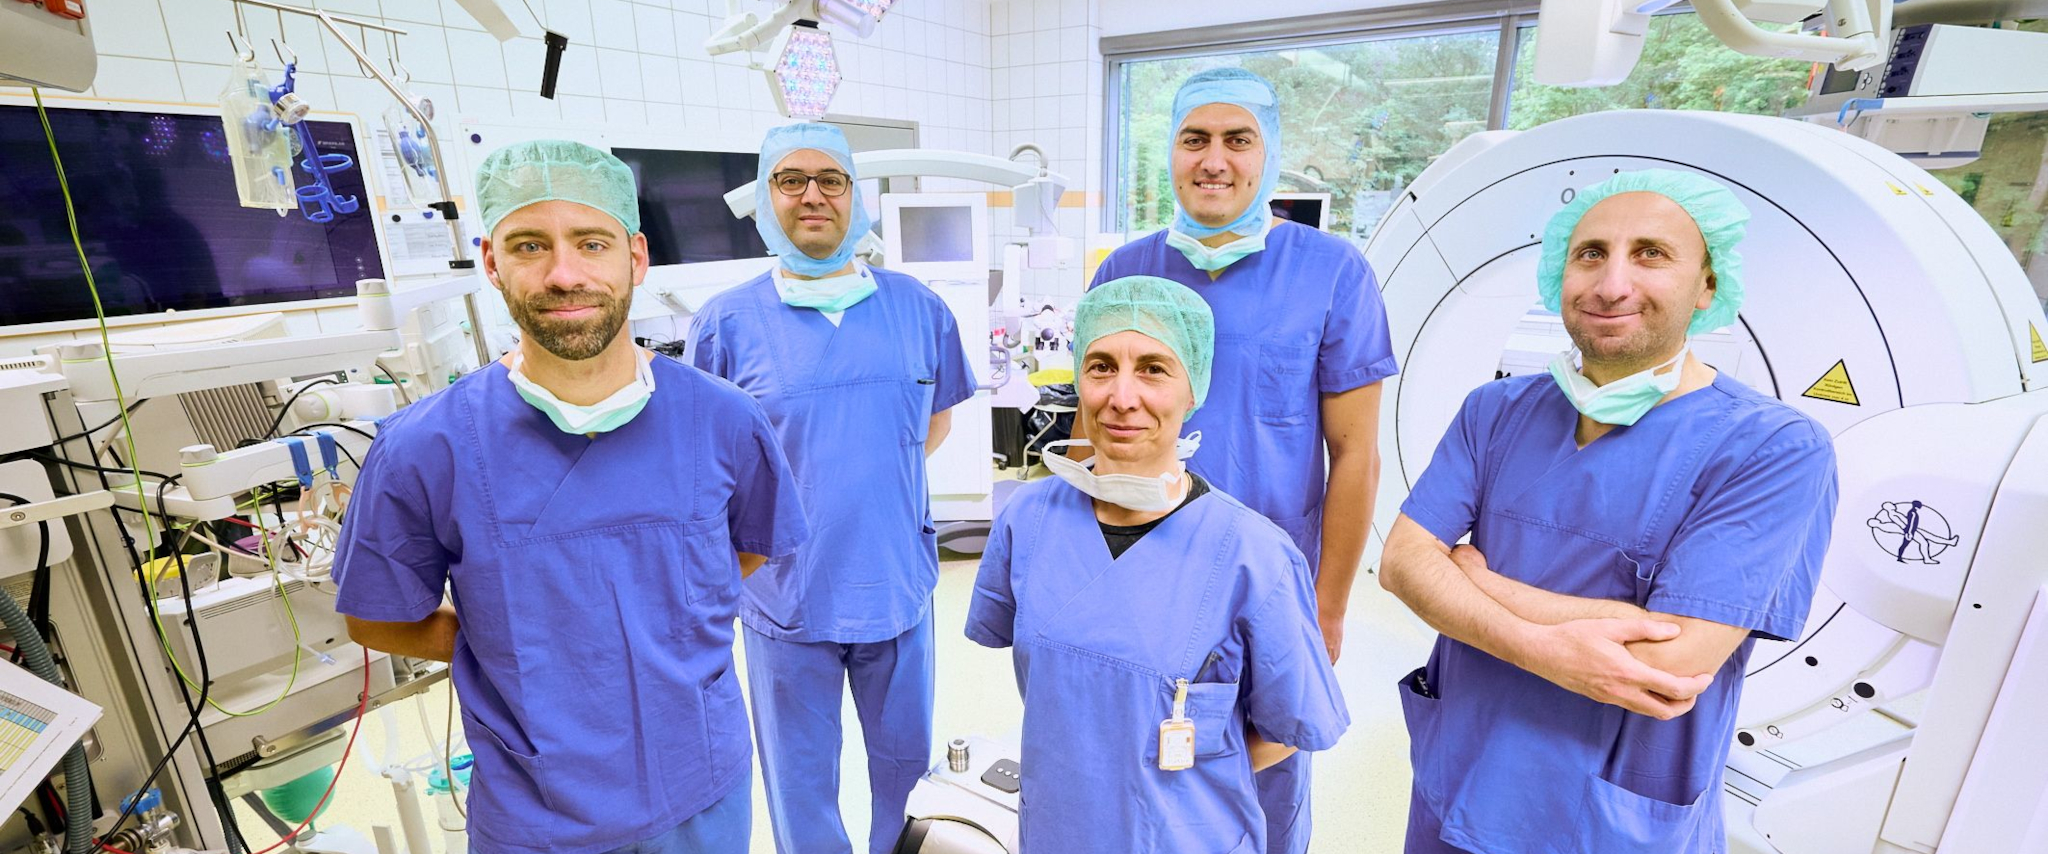 Wirbelsäulenzentrum am Universitätsklinikum Bonn versorgt schwerstkranke Patientinnen und Patienten